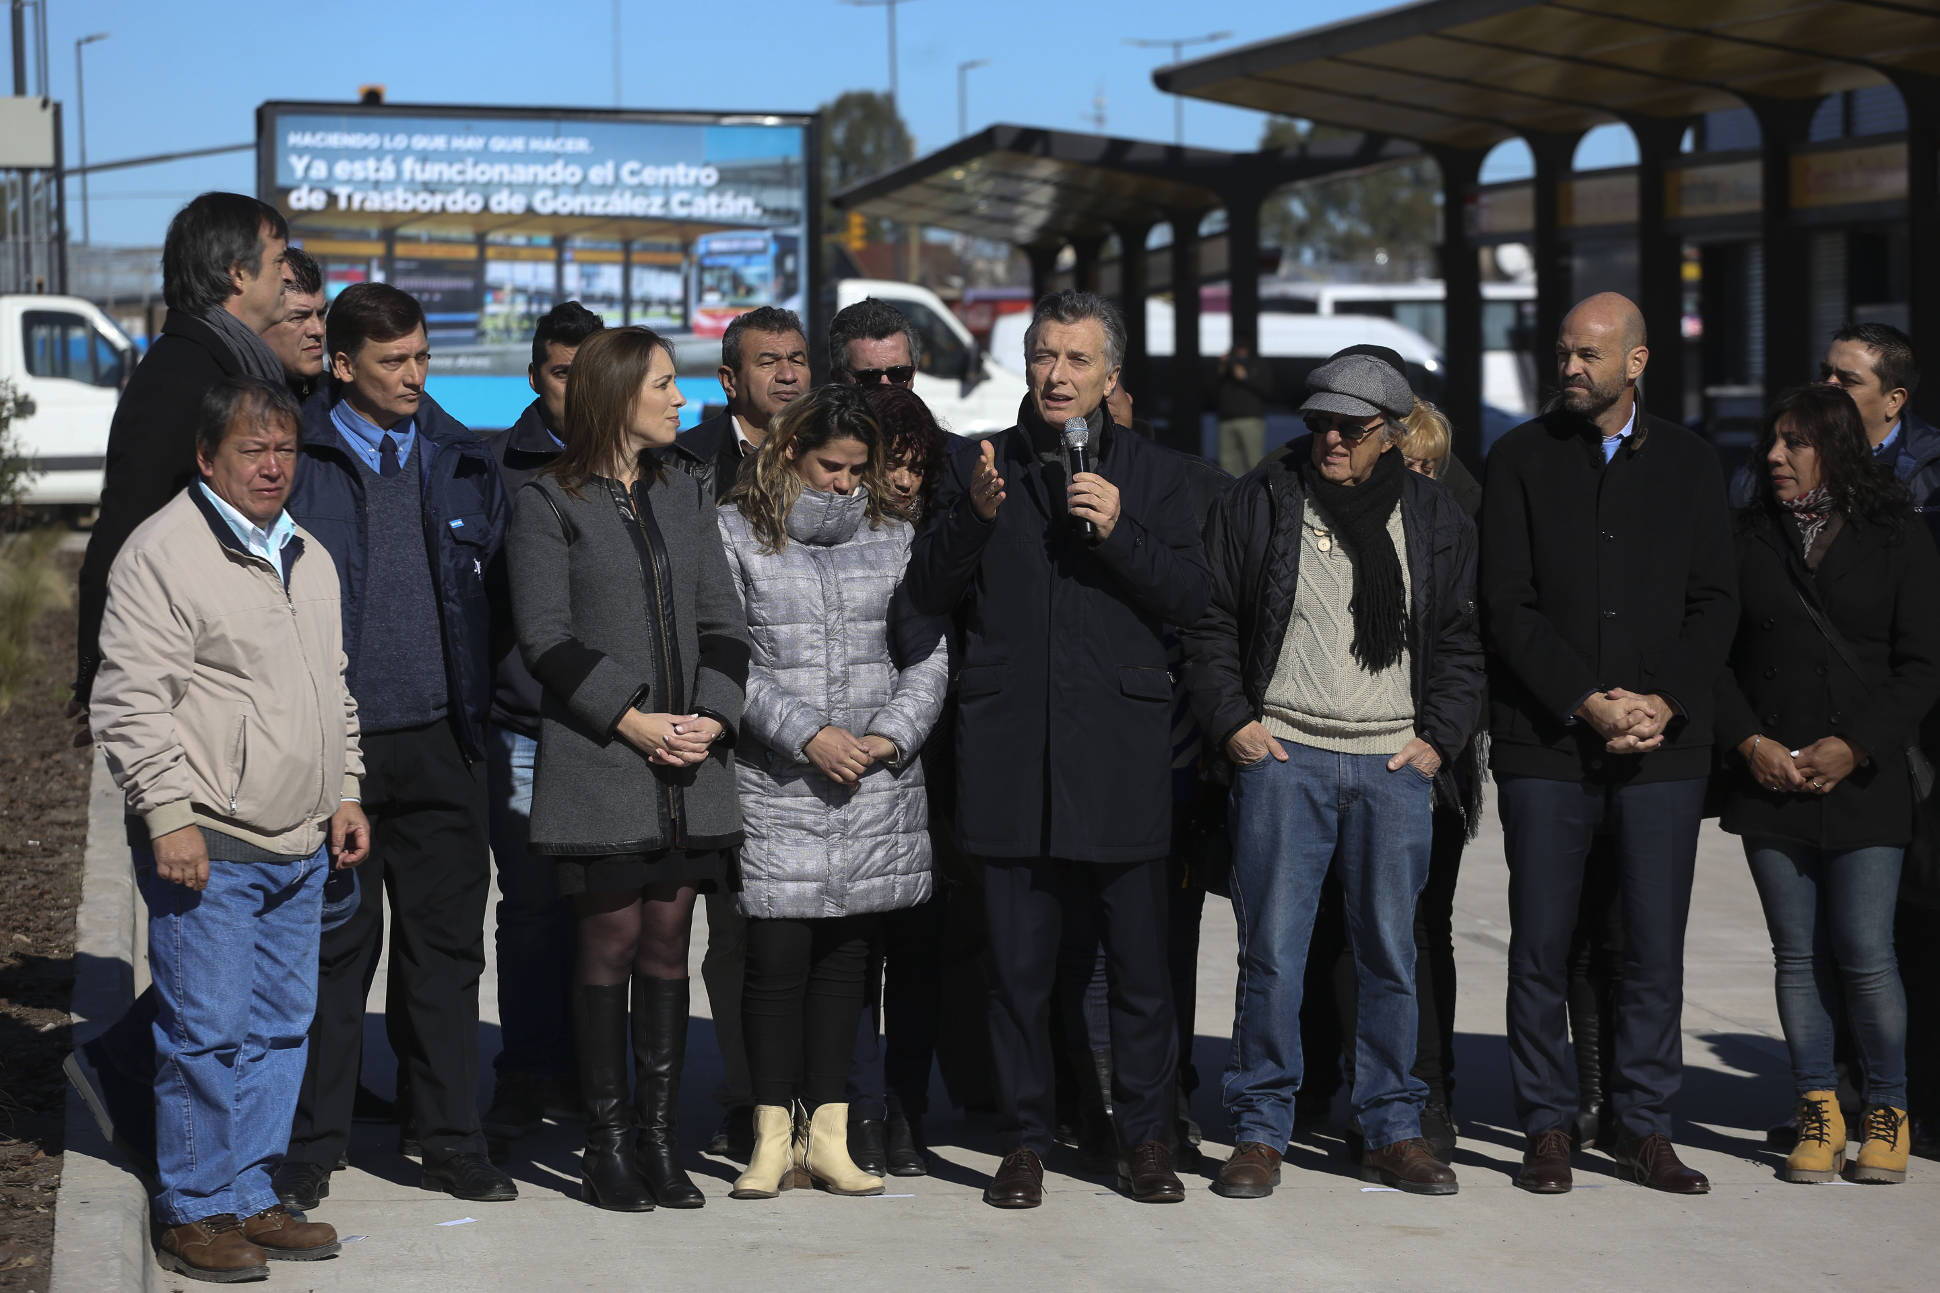 El Presidente inauguró el Centro de Trasbordo de La Matanza